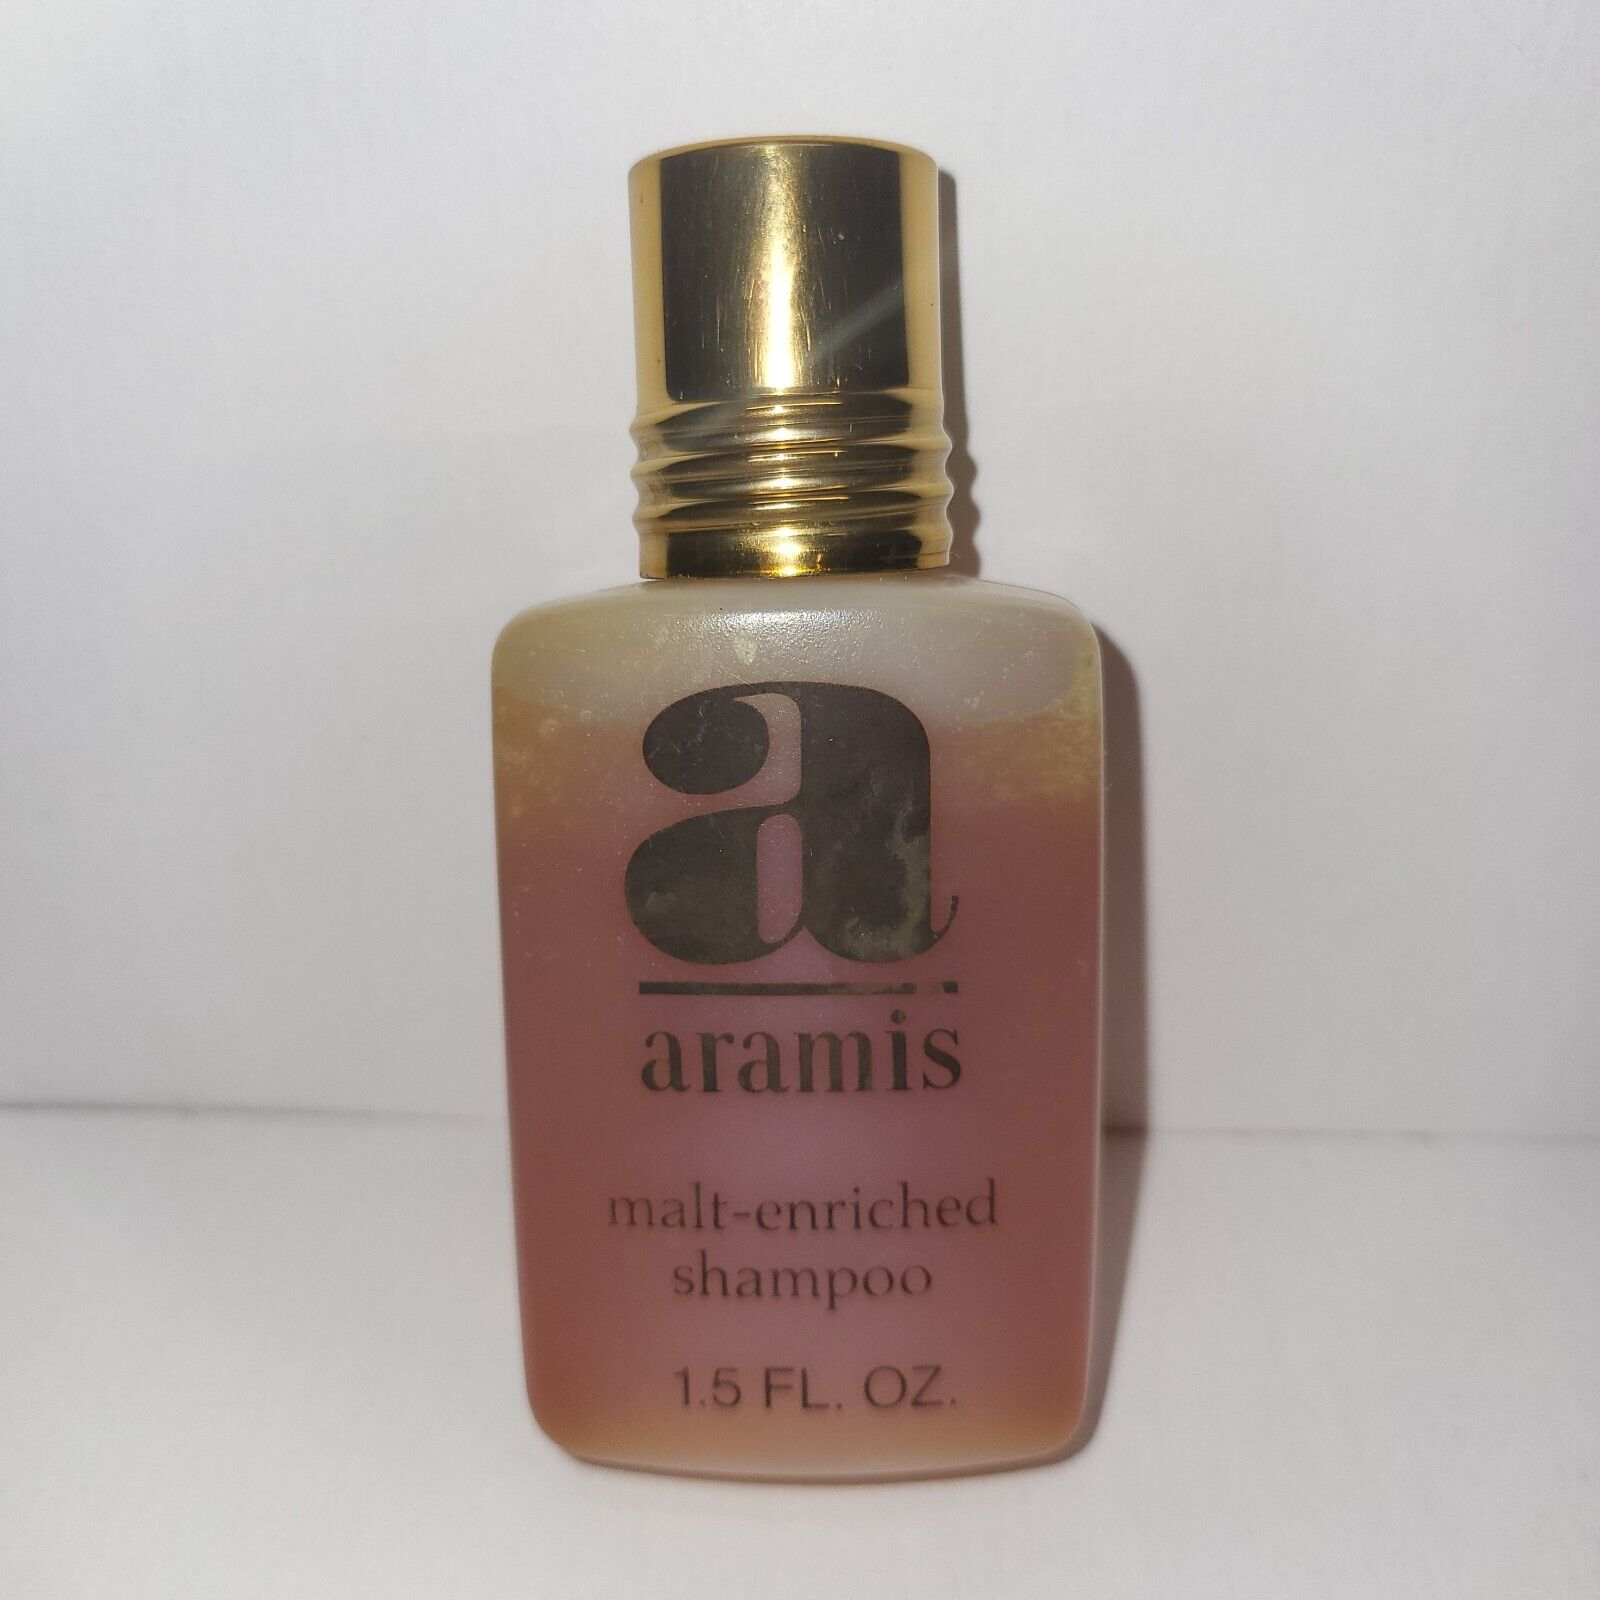 VINTAGE ARAMIS TRAVEL 1.5 FL OZ malt enriched shampoo plastic bottle almost full